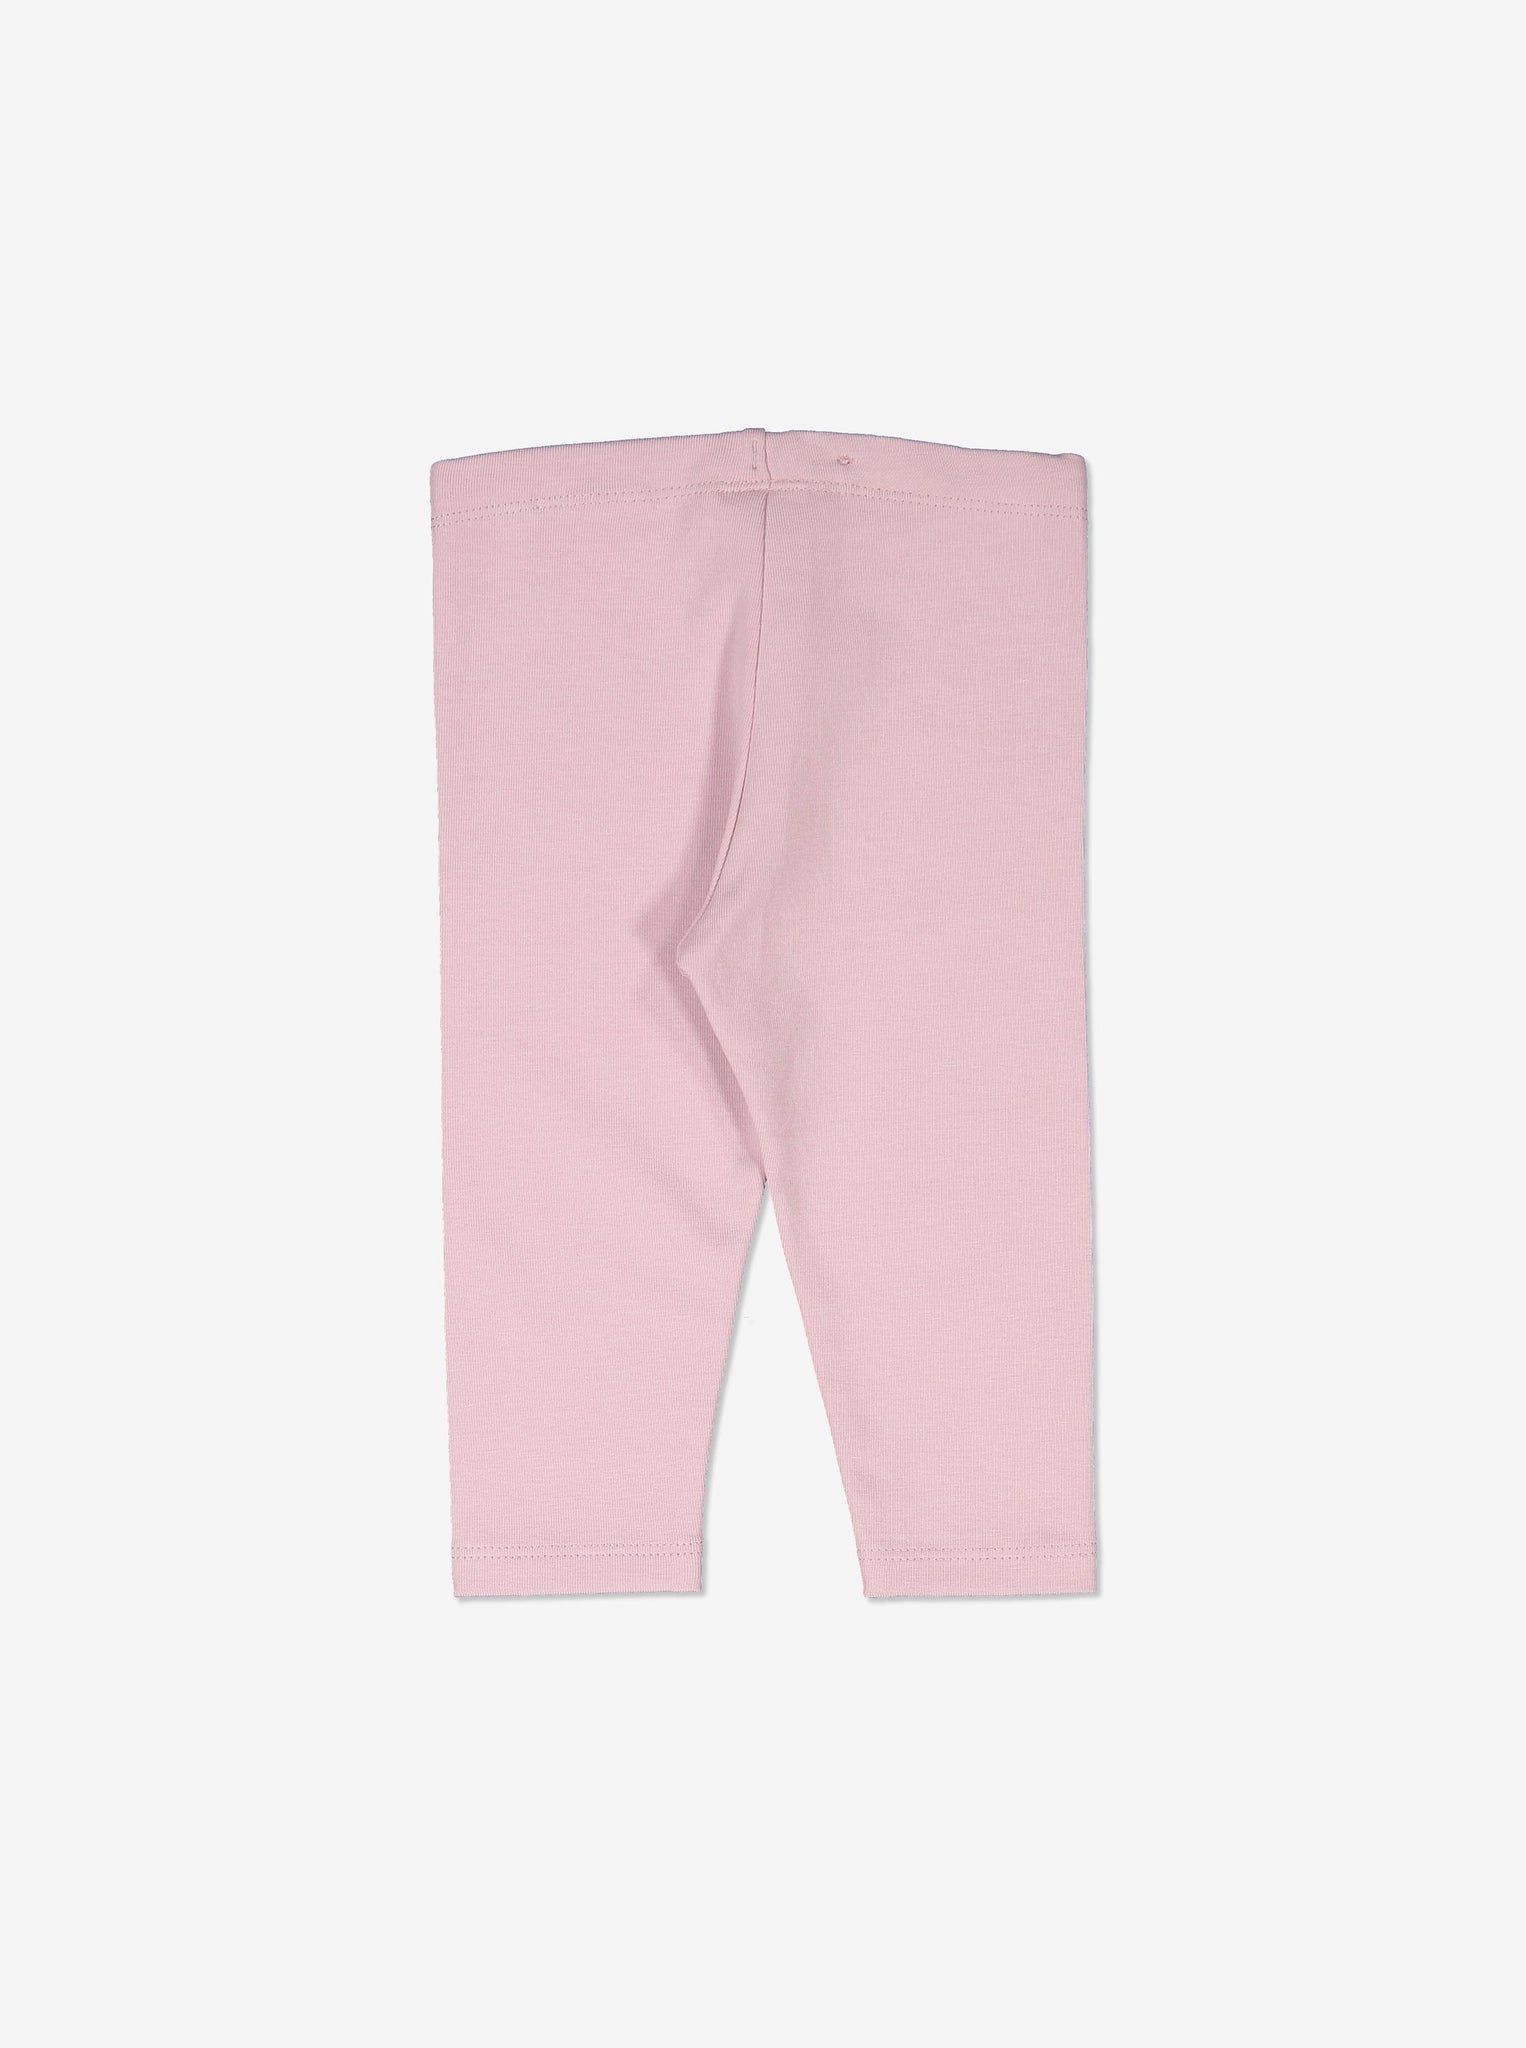 Organic Girls Baby Leggings, Scandinavian Baby Clothes | Polarn O. Pyret UK